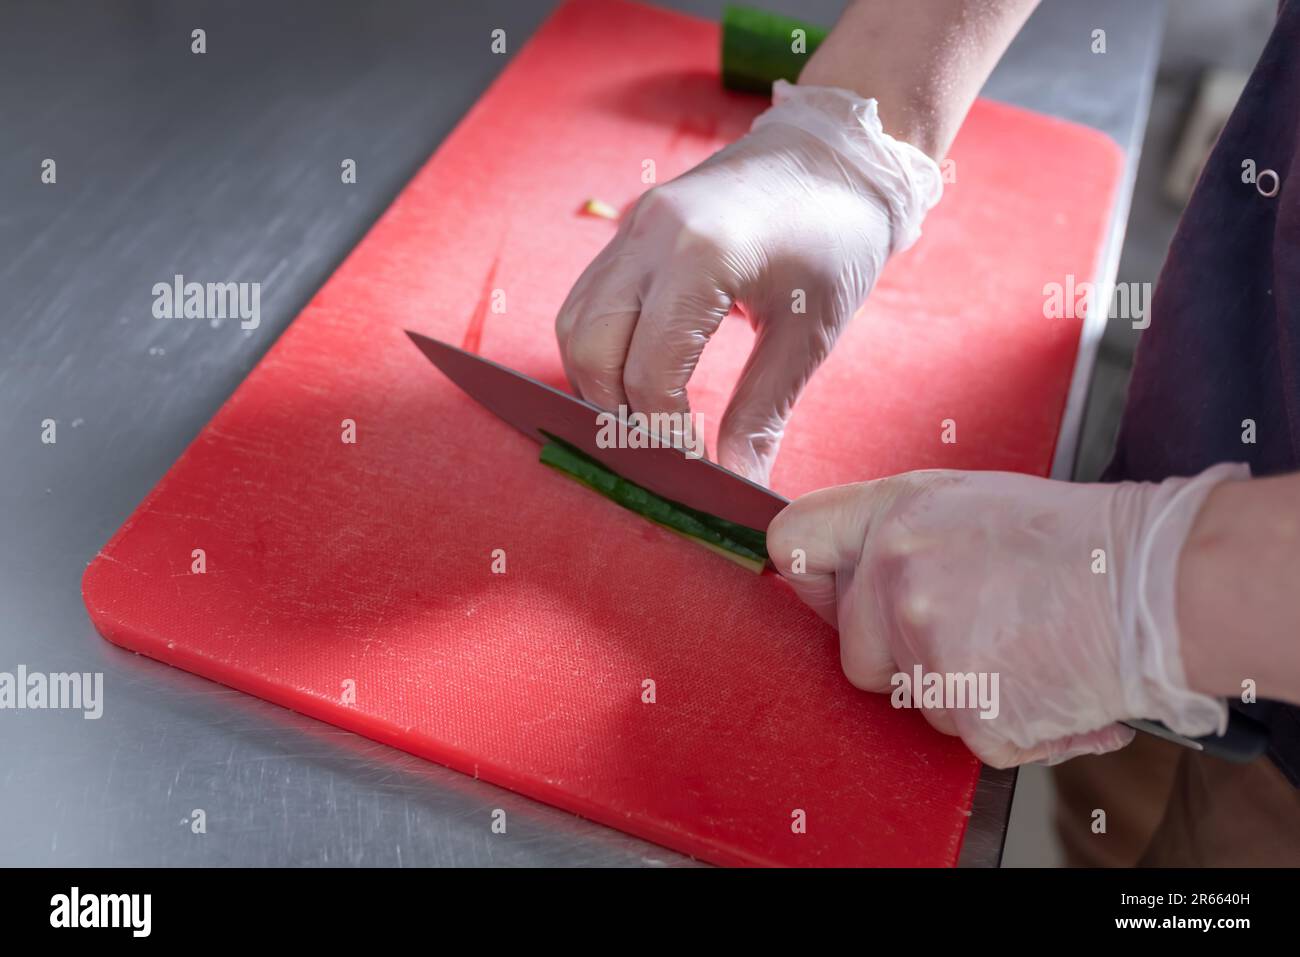 Le cuisinier coupe le concombre pour les petits pains à sushis sur un tableau rouge. Photo de haute qualité Banque D'Images